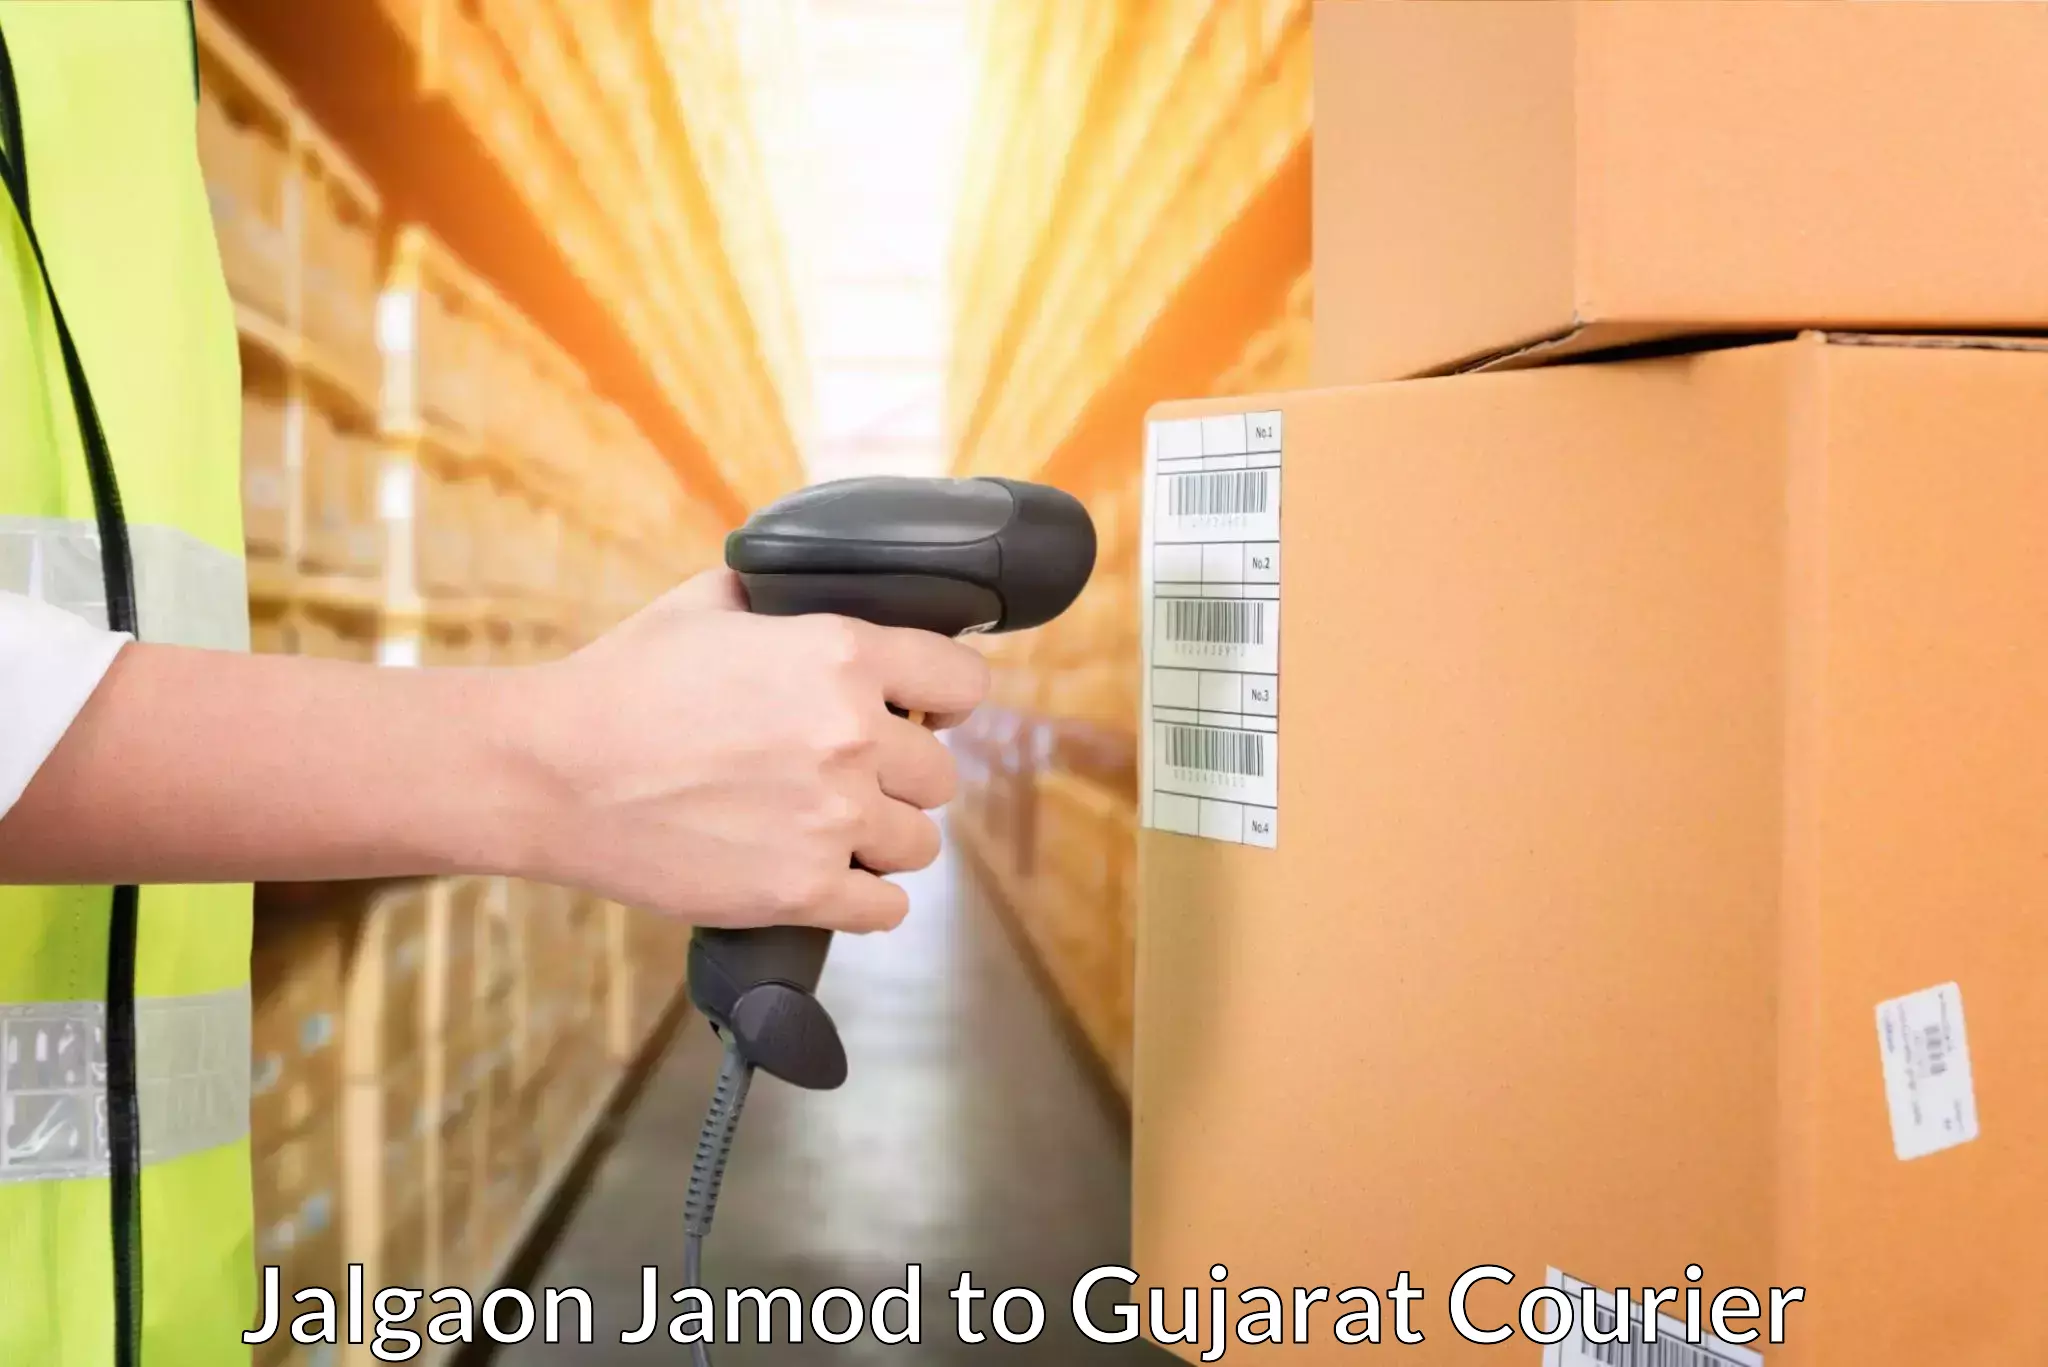 Urgent courier needs Jalgaon Jamod to Vijapur